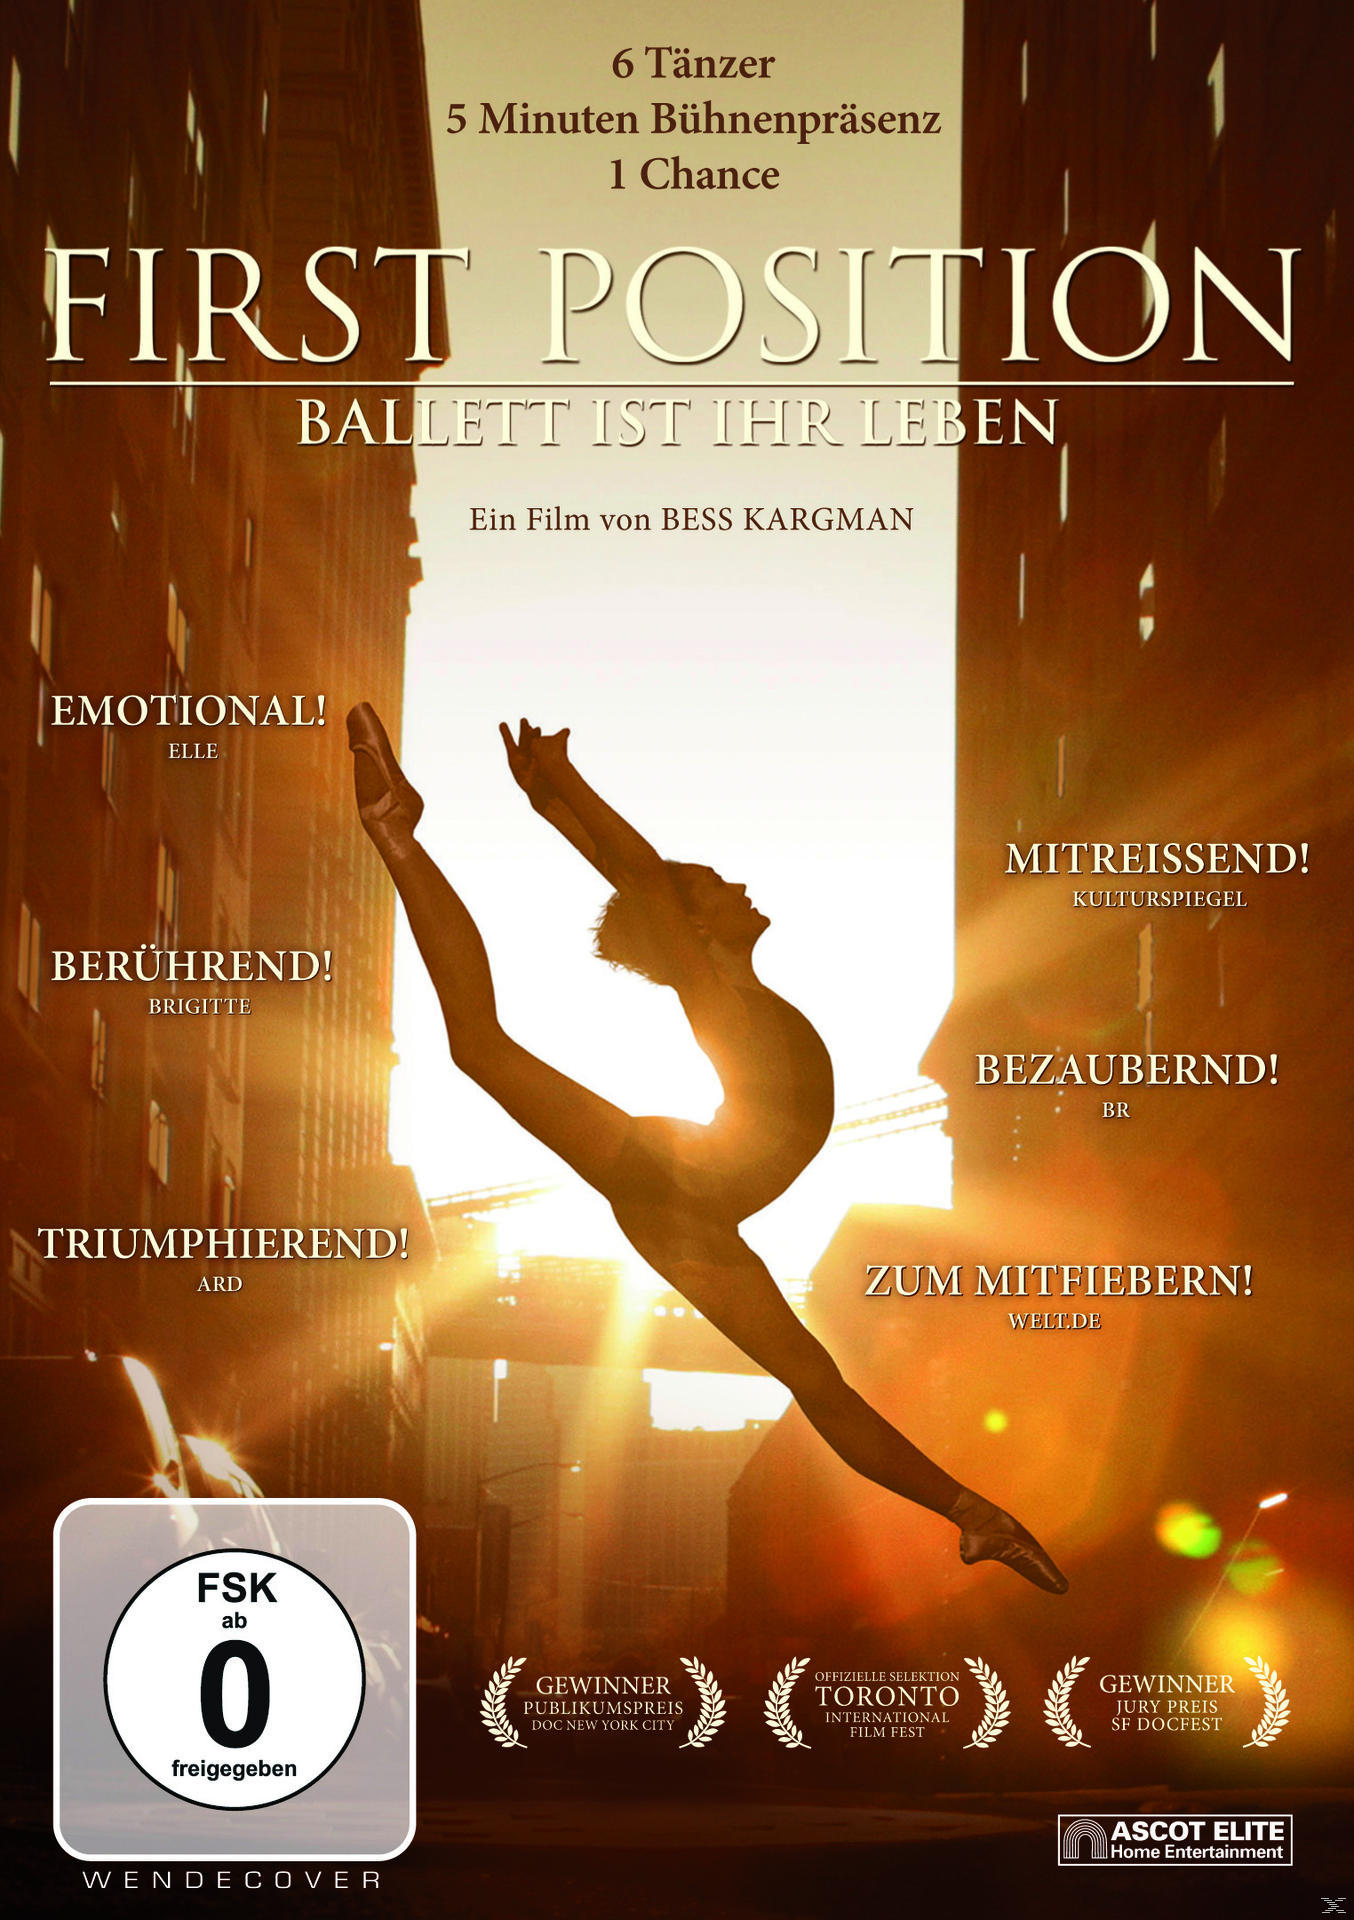 First Position Leben DVD - ist Ballett